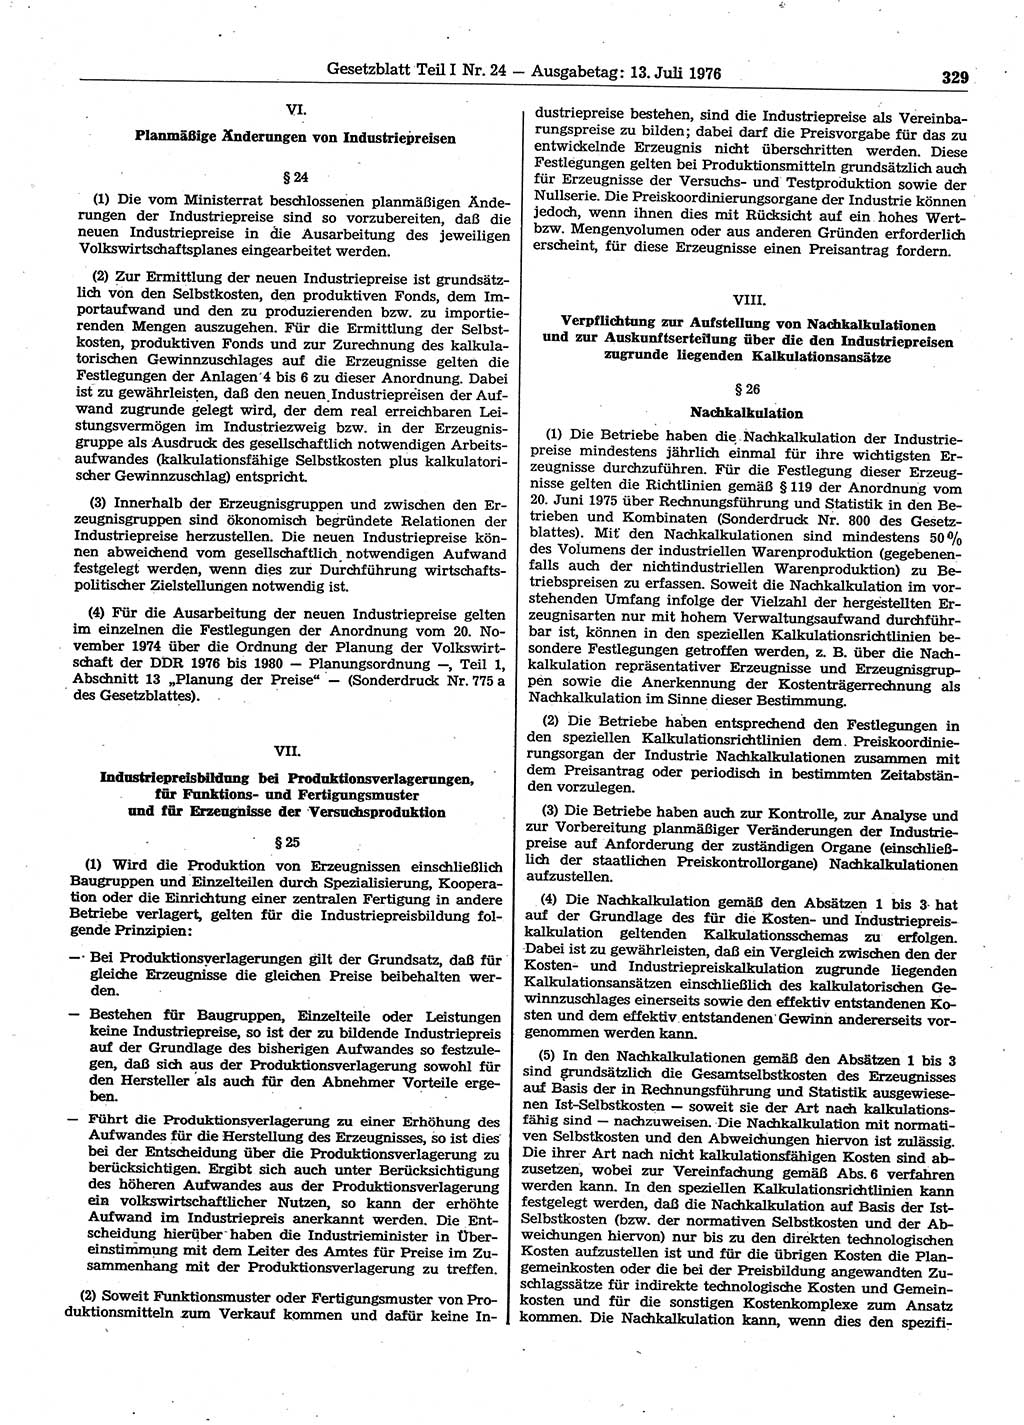 Gesetzblatt (GBl.) der Deutschen Demokratischen Republik (DDR) Teil Ⅰ 1976, Seite 329 (GBl. DDR Ⅰ 1976, S. 329)